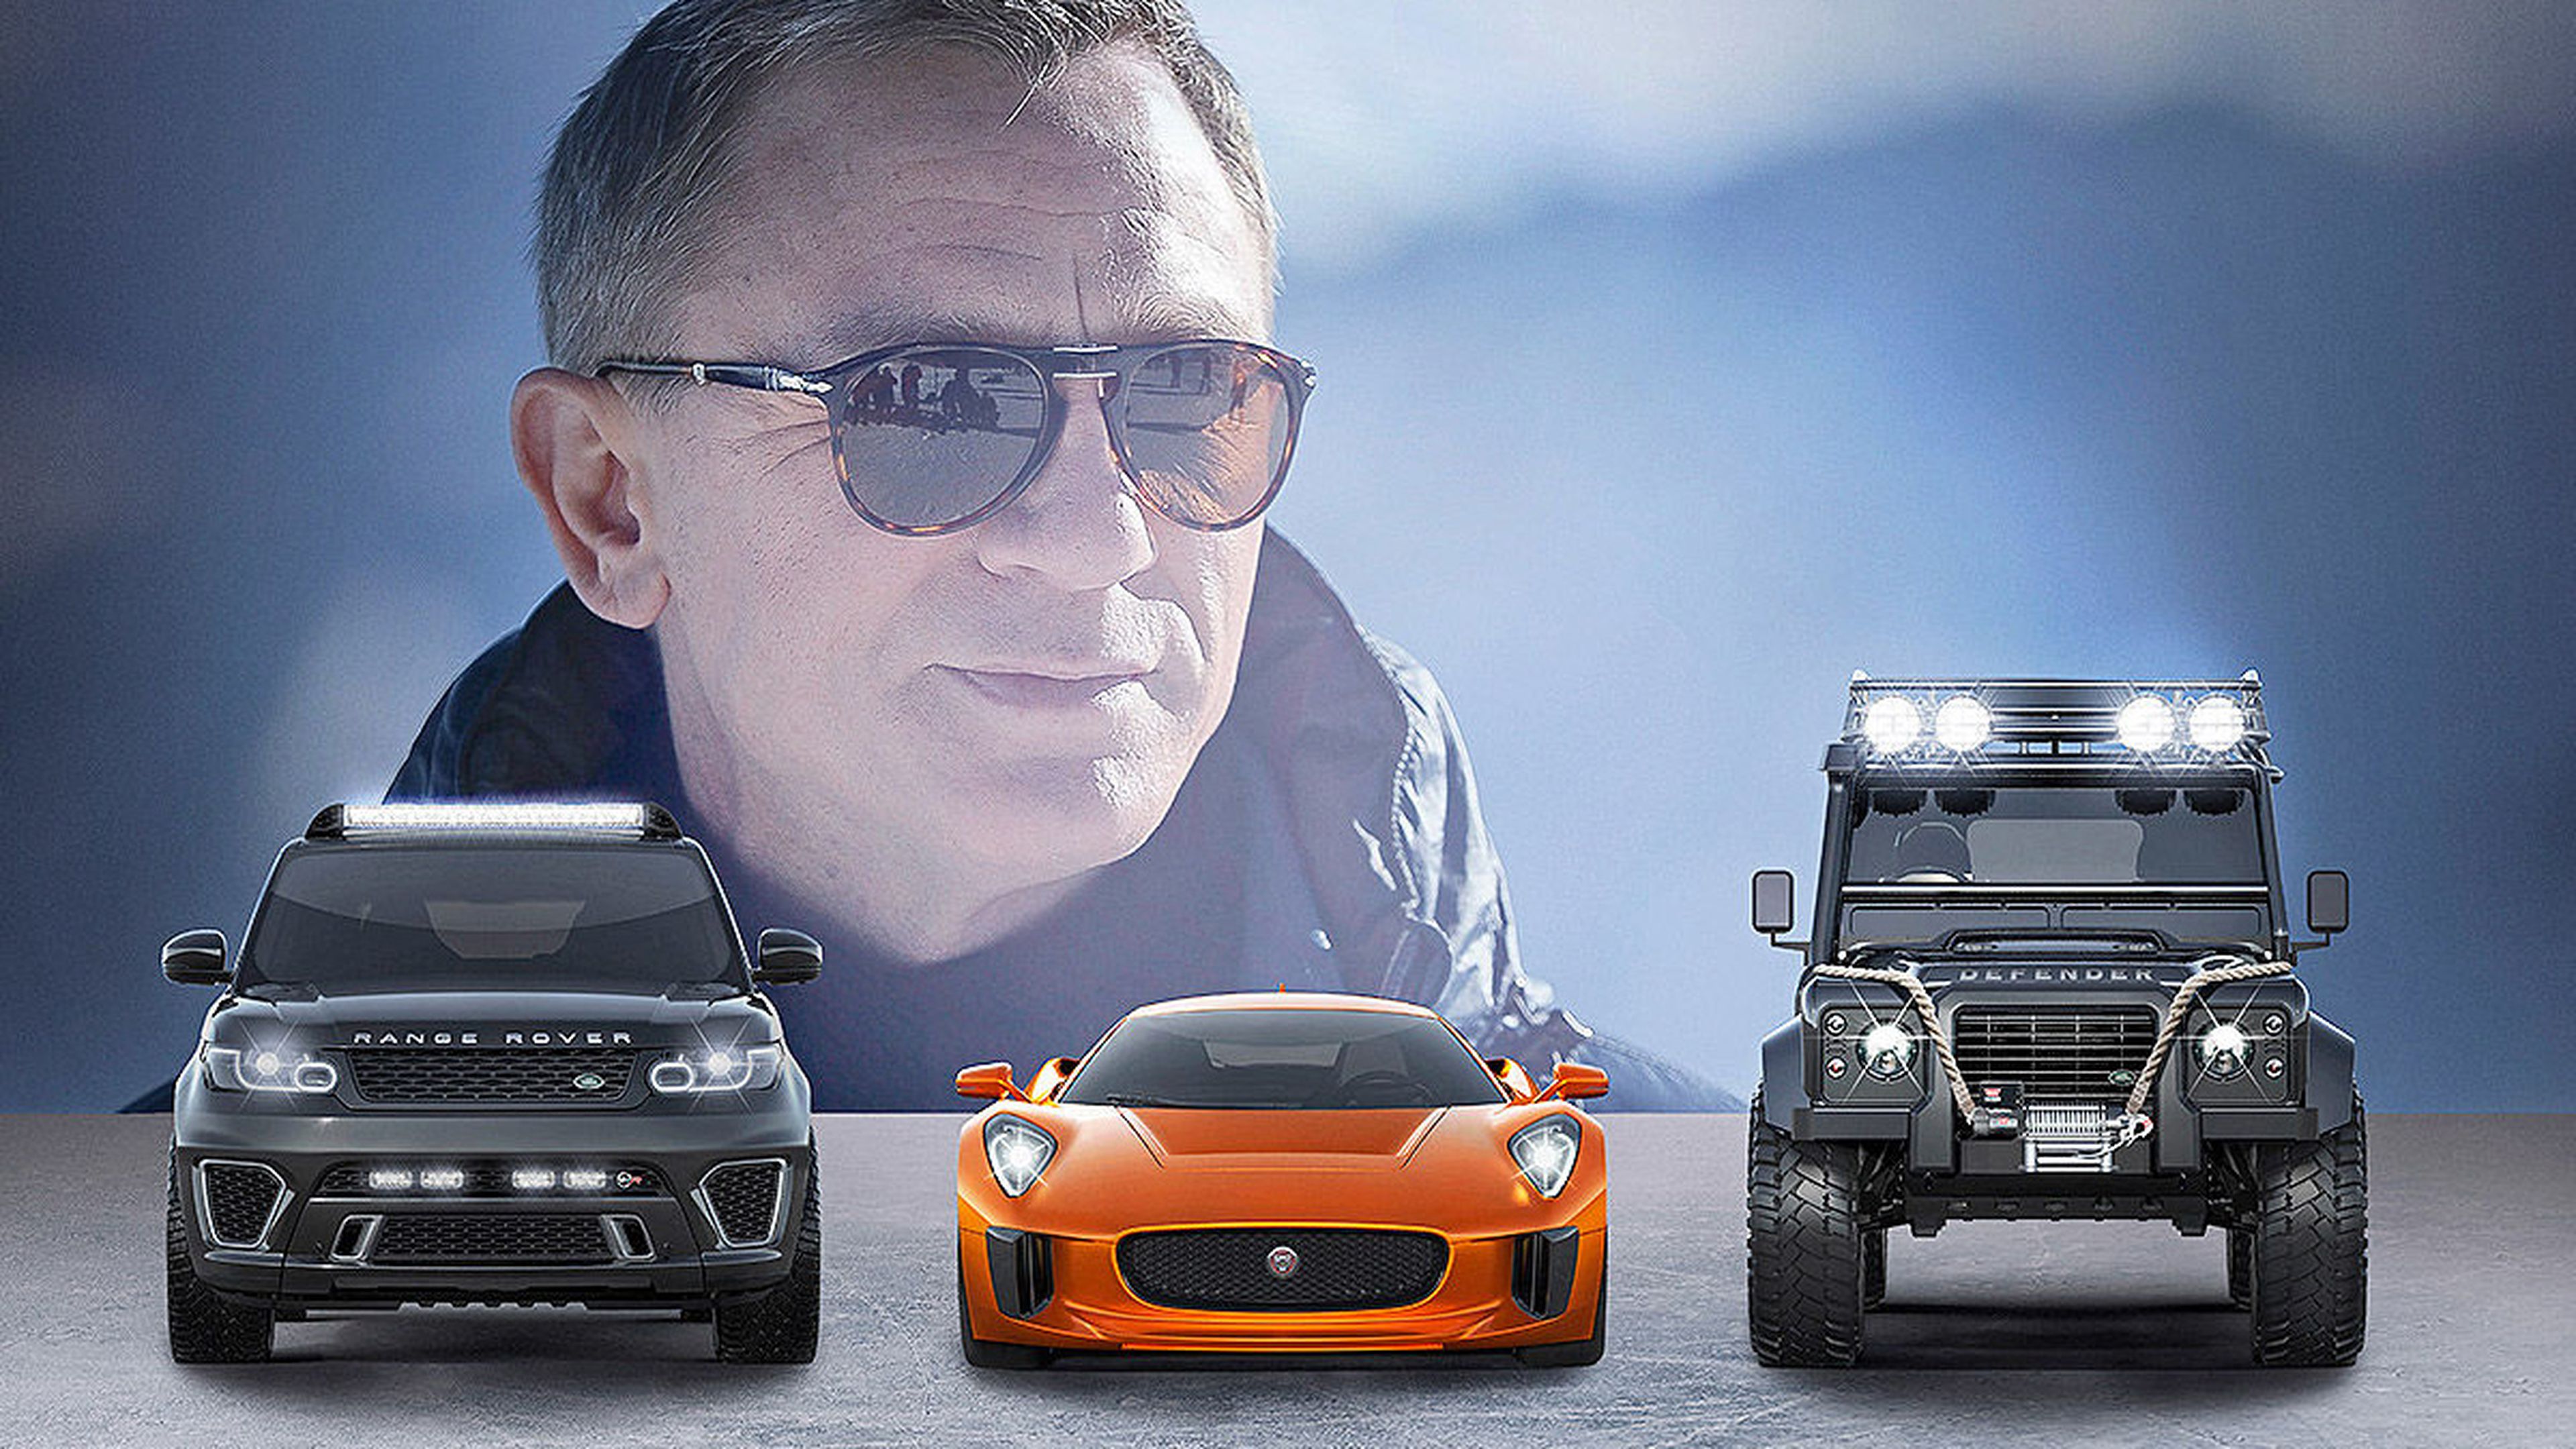 Los coches de la nueva película de James Bond, en Frankfurt